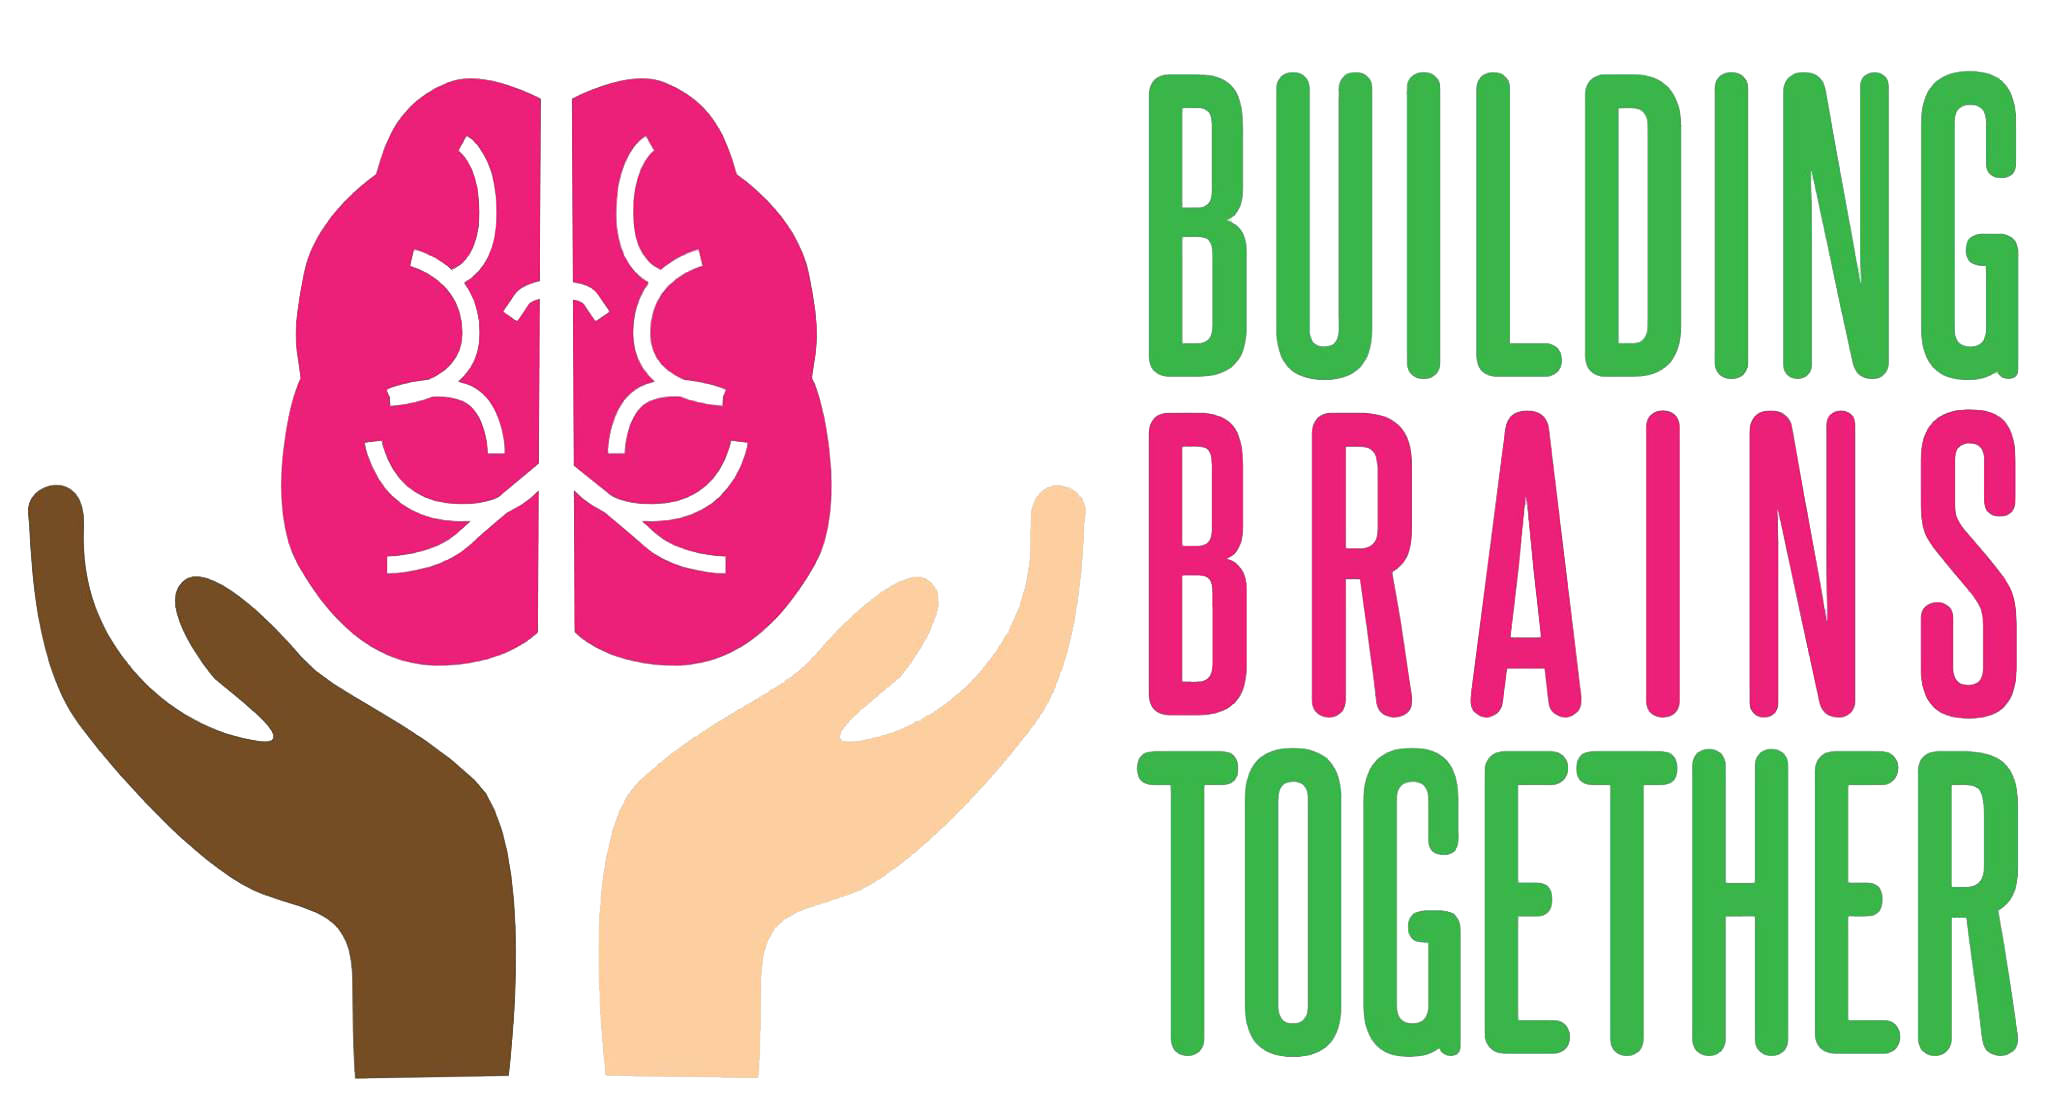 Building Brains